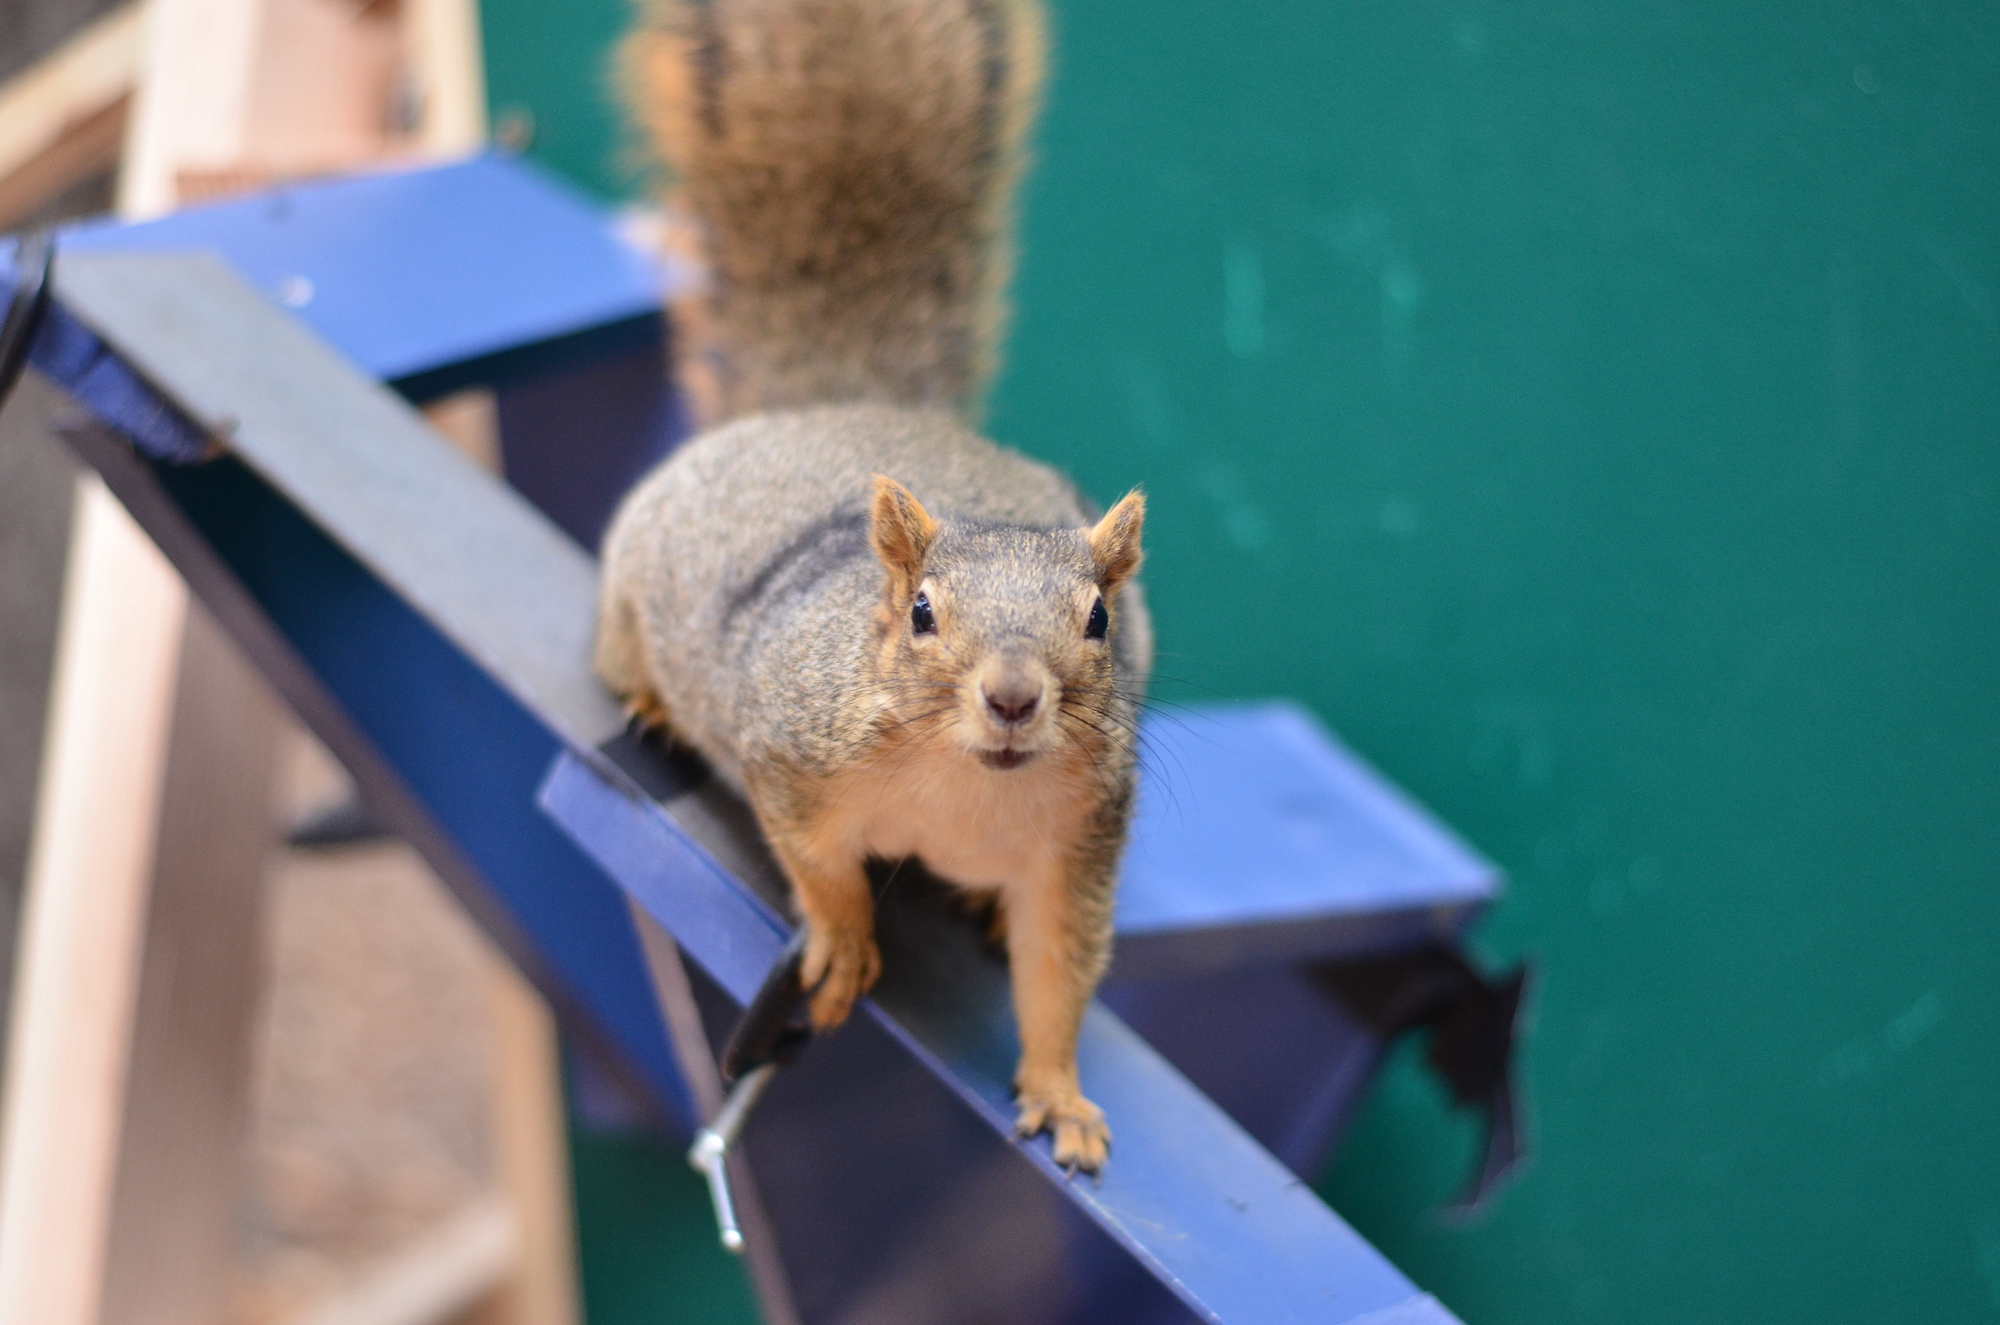 Squirrel Parkour? The Science Behind Squirrel Acrobatics